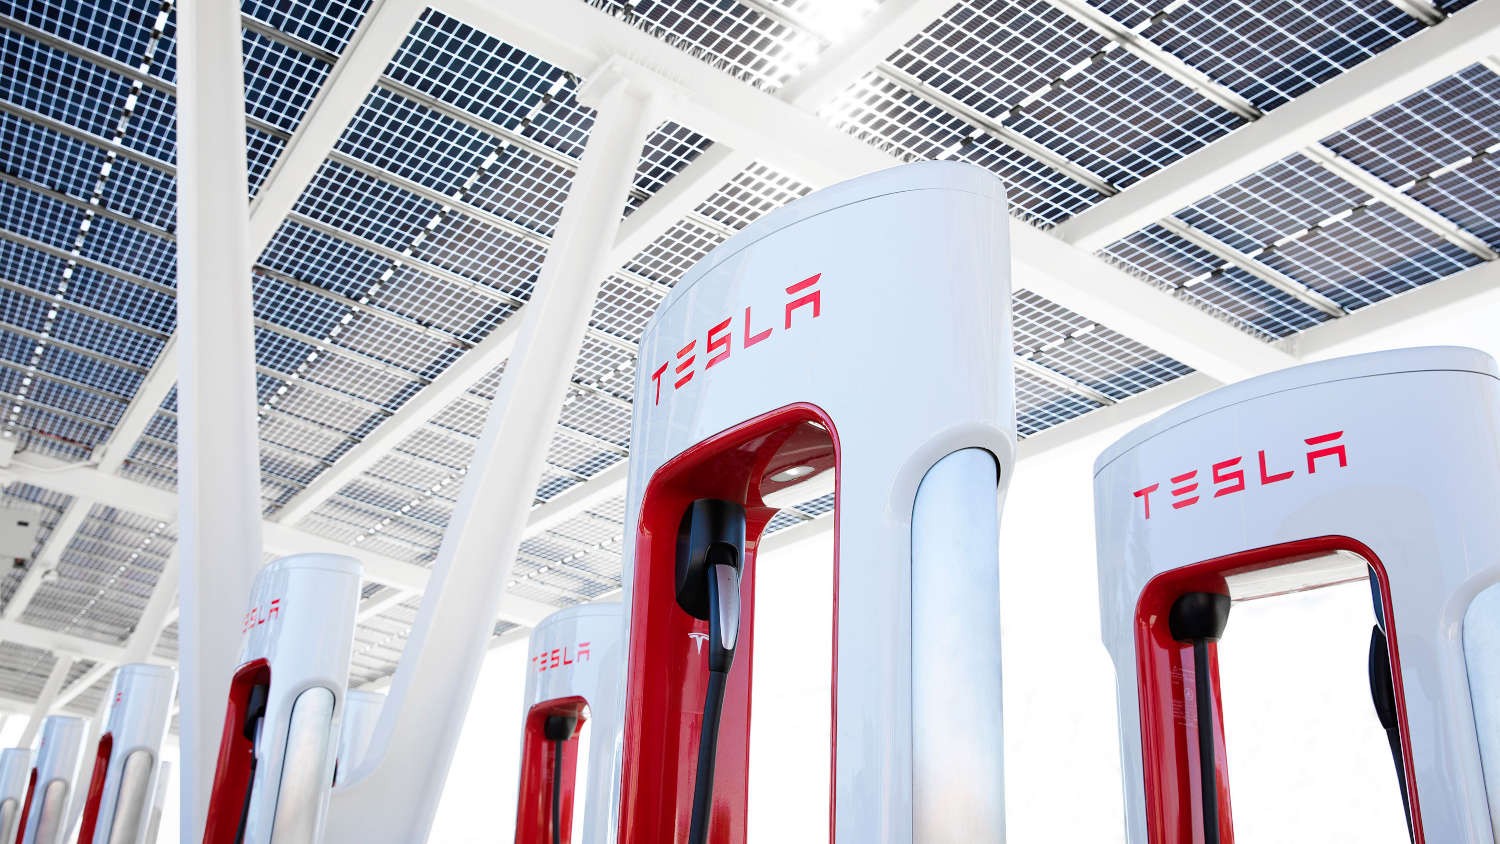 The Tesla Magic Dock at Tesla Superchargers